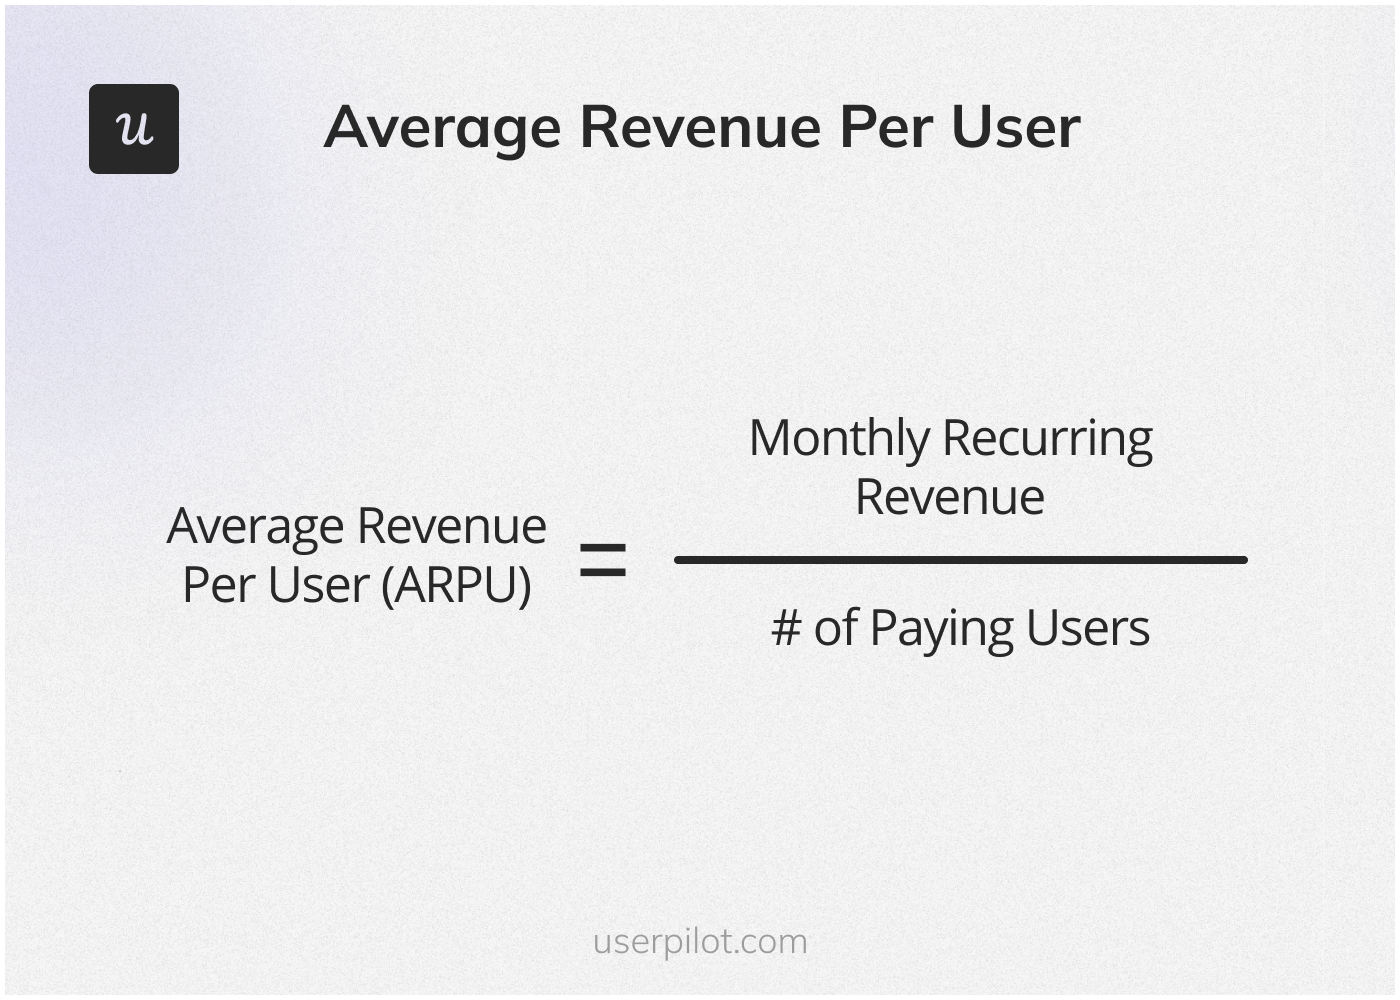 Average Revenue Per User (ARPU) calculation